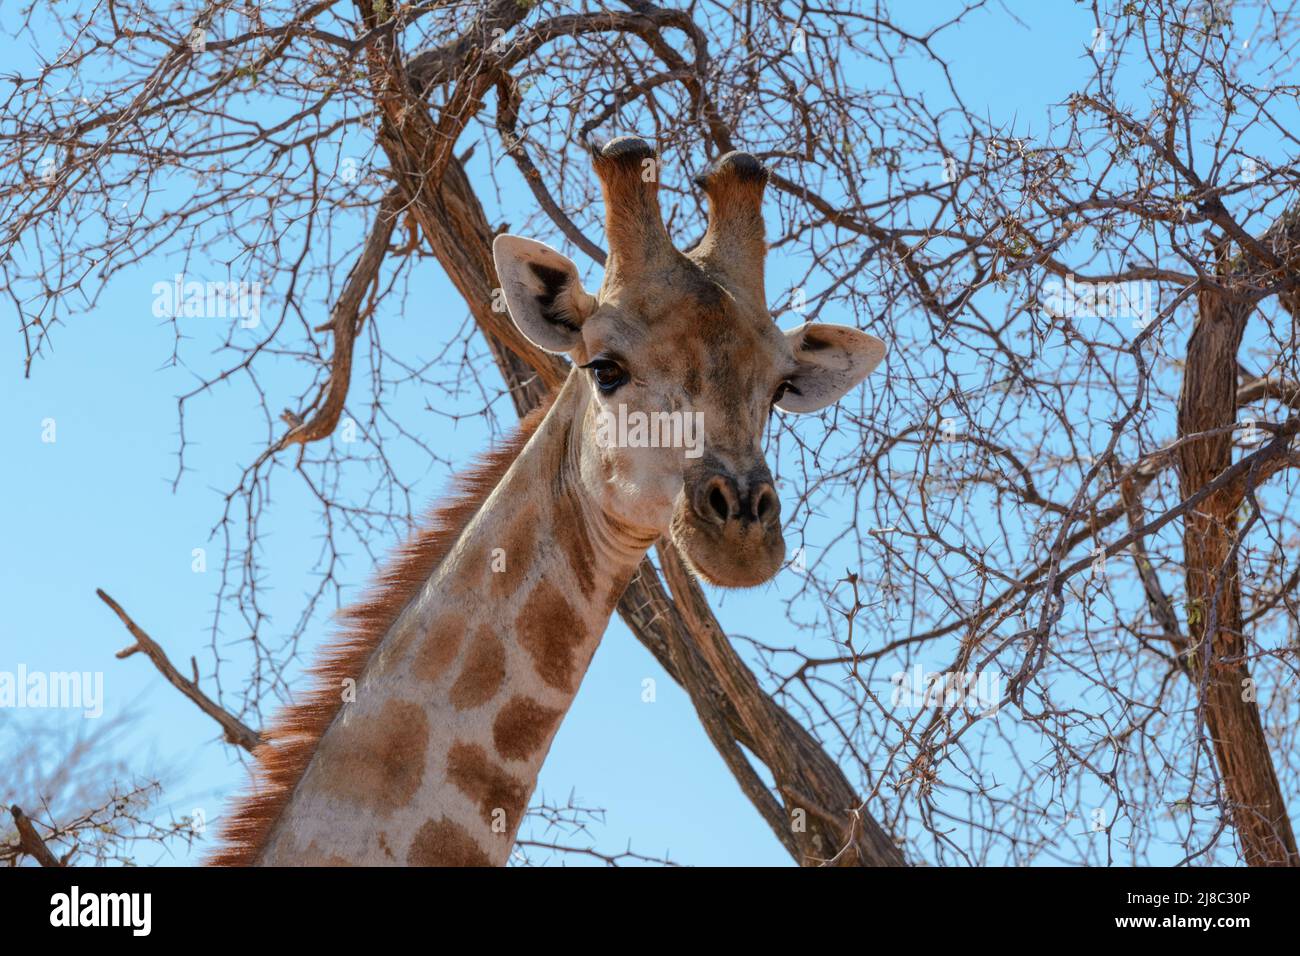 Girafe angolaise (Giraffa camelopardalis angolensis ou Giraffa giraffa angolensis), également connue sous le nom de girafe namibienne, Namibie, Afrique du Sud-Ouest Banque D'Images